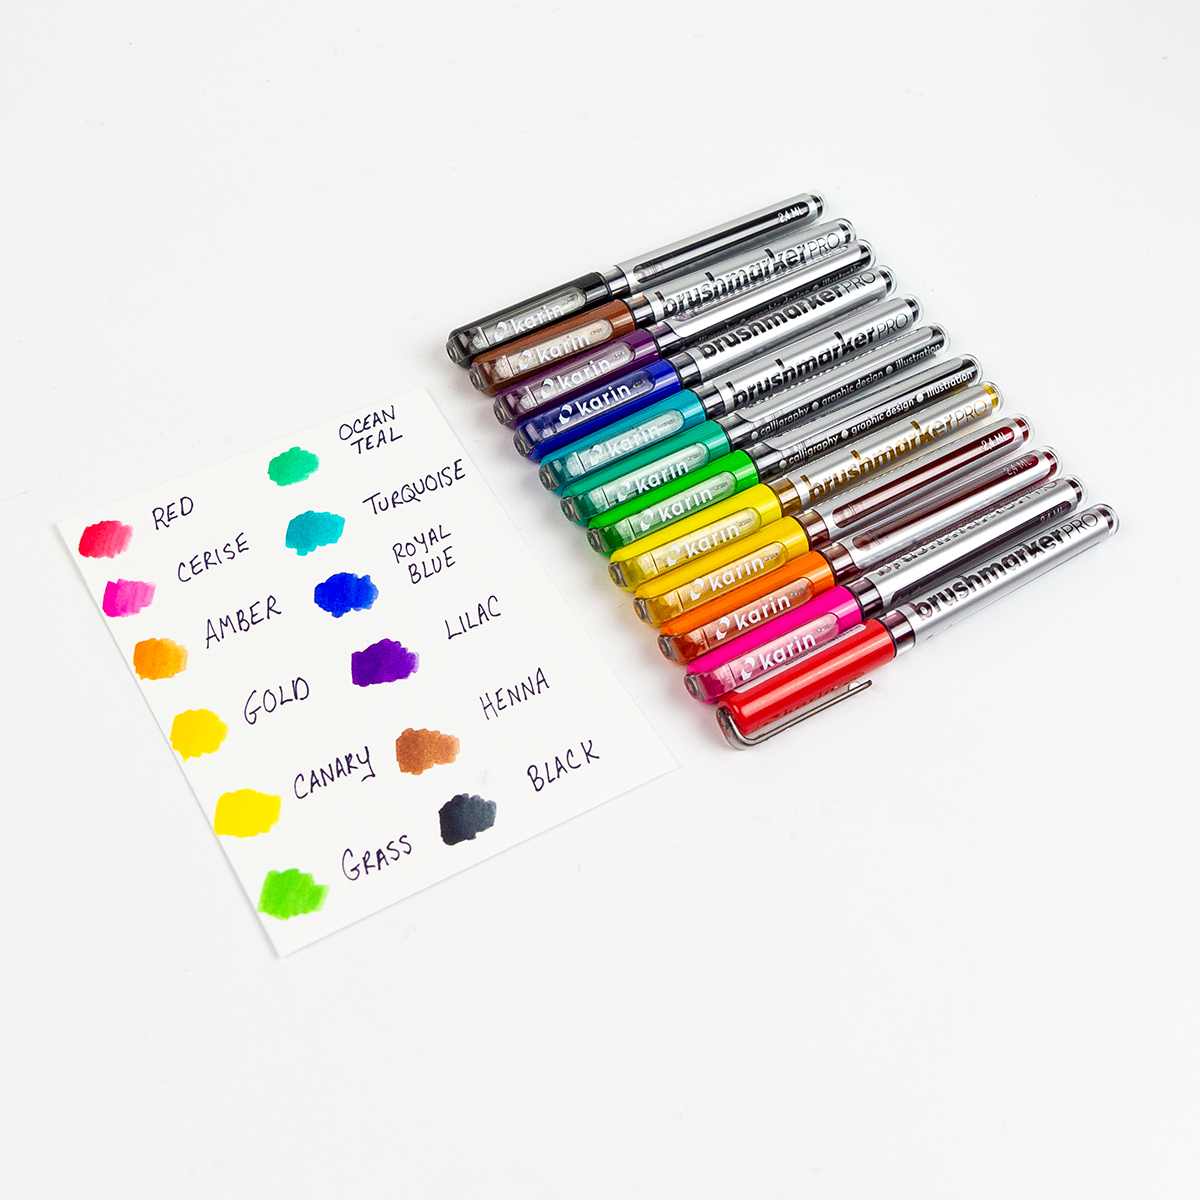 Karin Brushmarker Pro Set of 12 Basic Colours